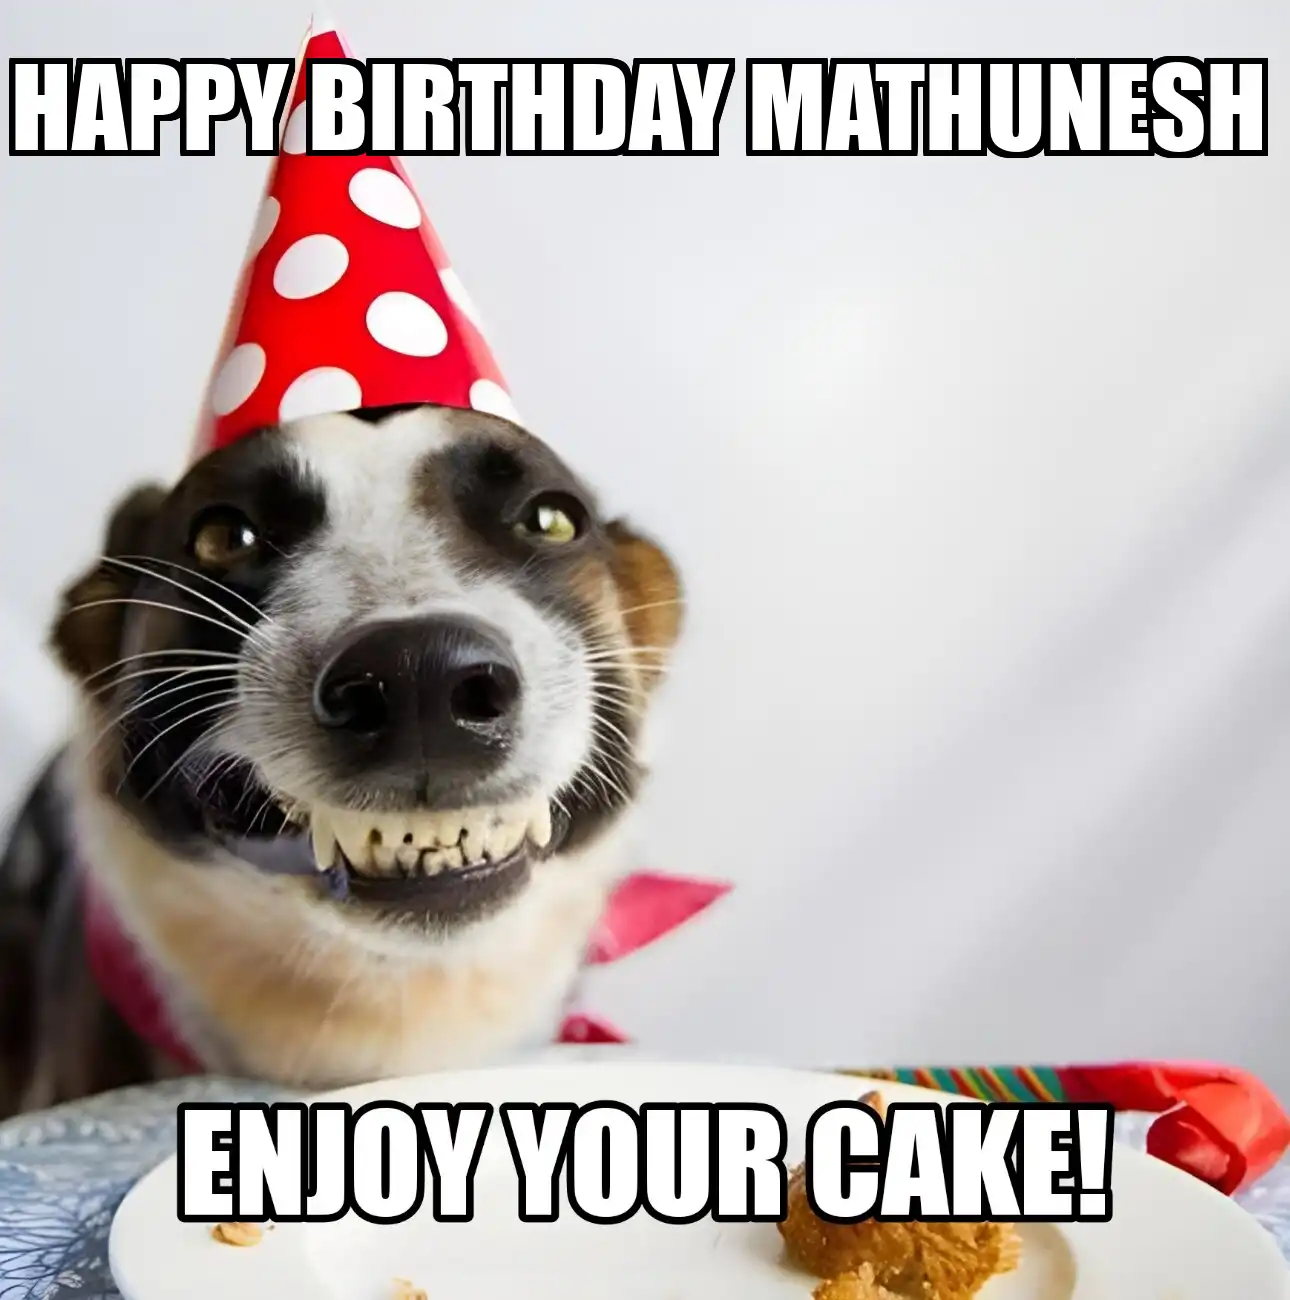 Happy Birthday Mathunesh Enjoy Your Cake Dog Meme